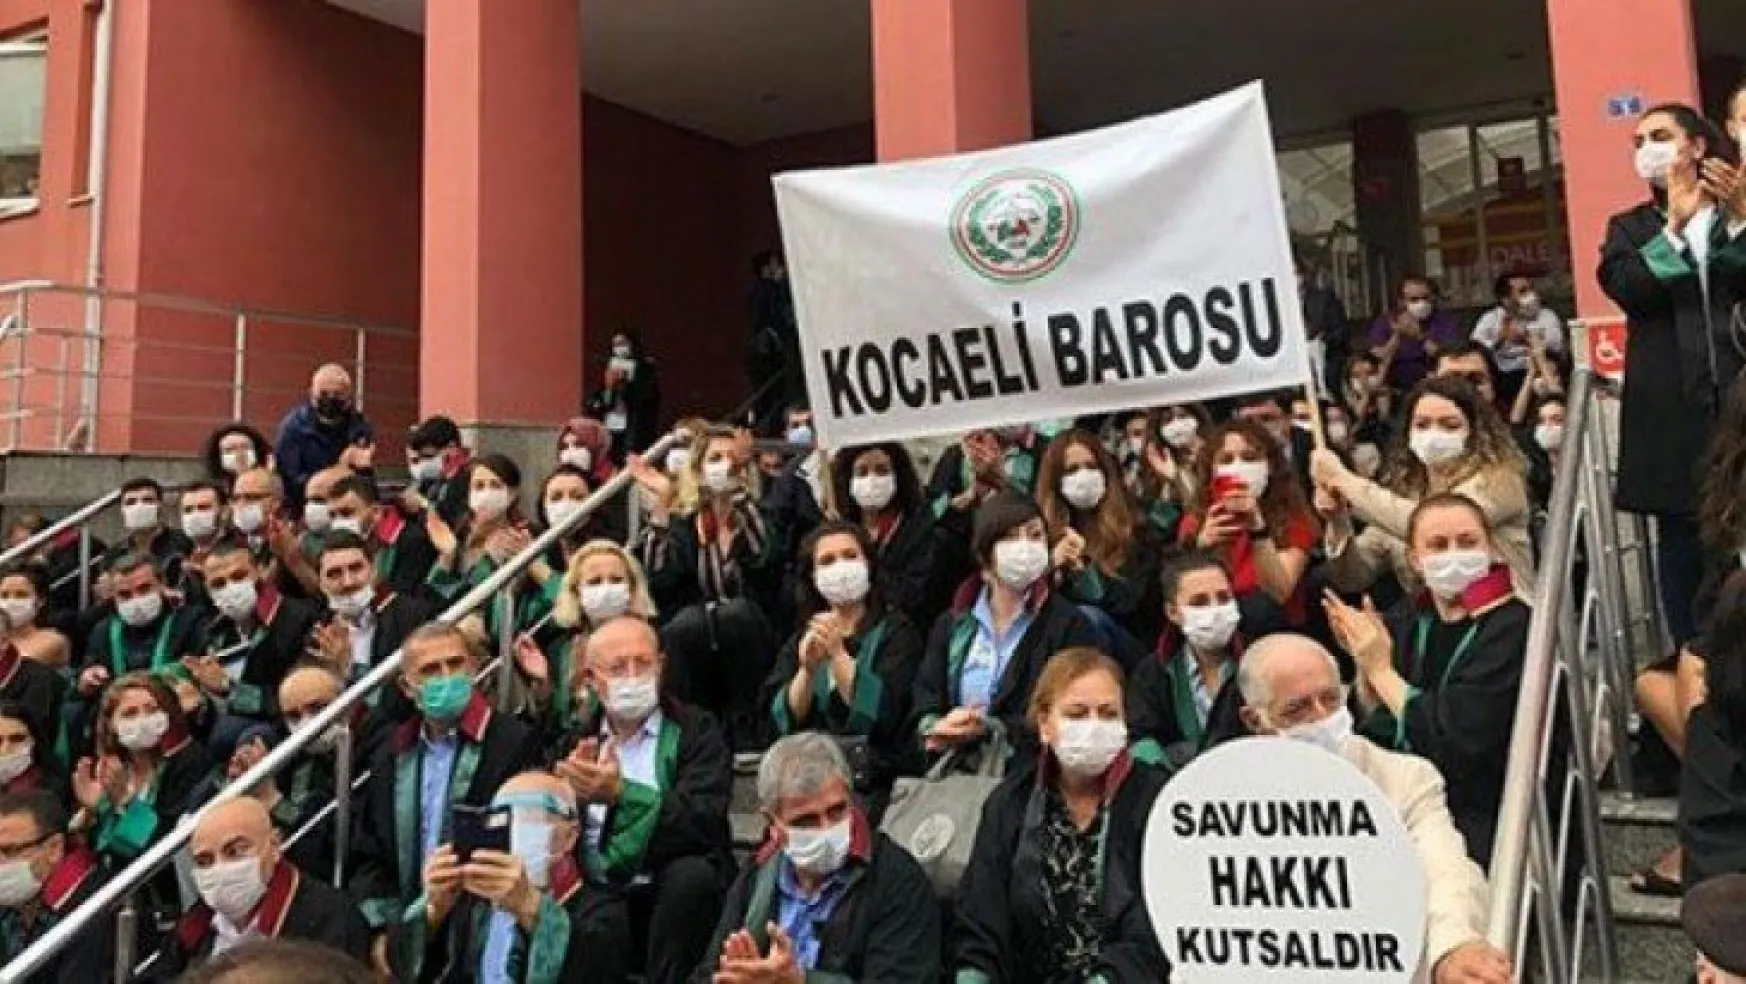 Kocaeli'den Ankara'ya yürüyen İzmit barosuna destek